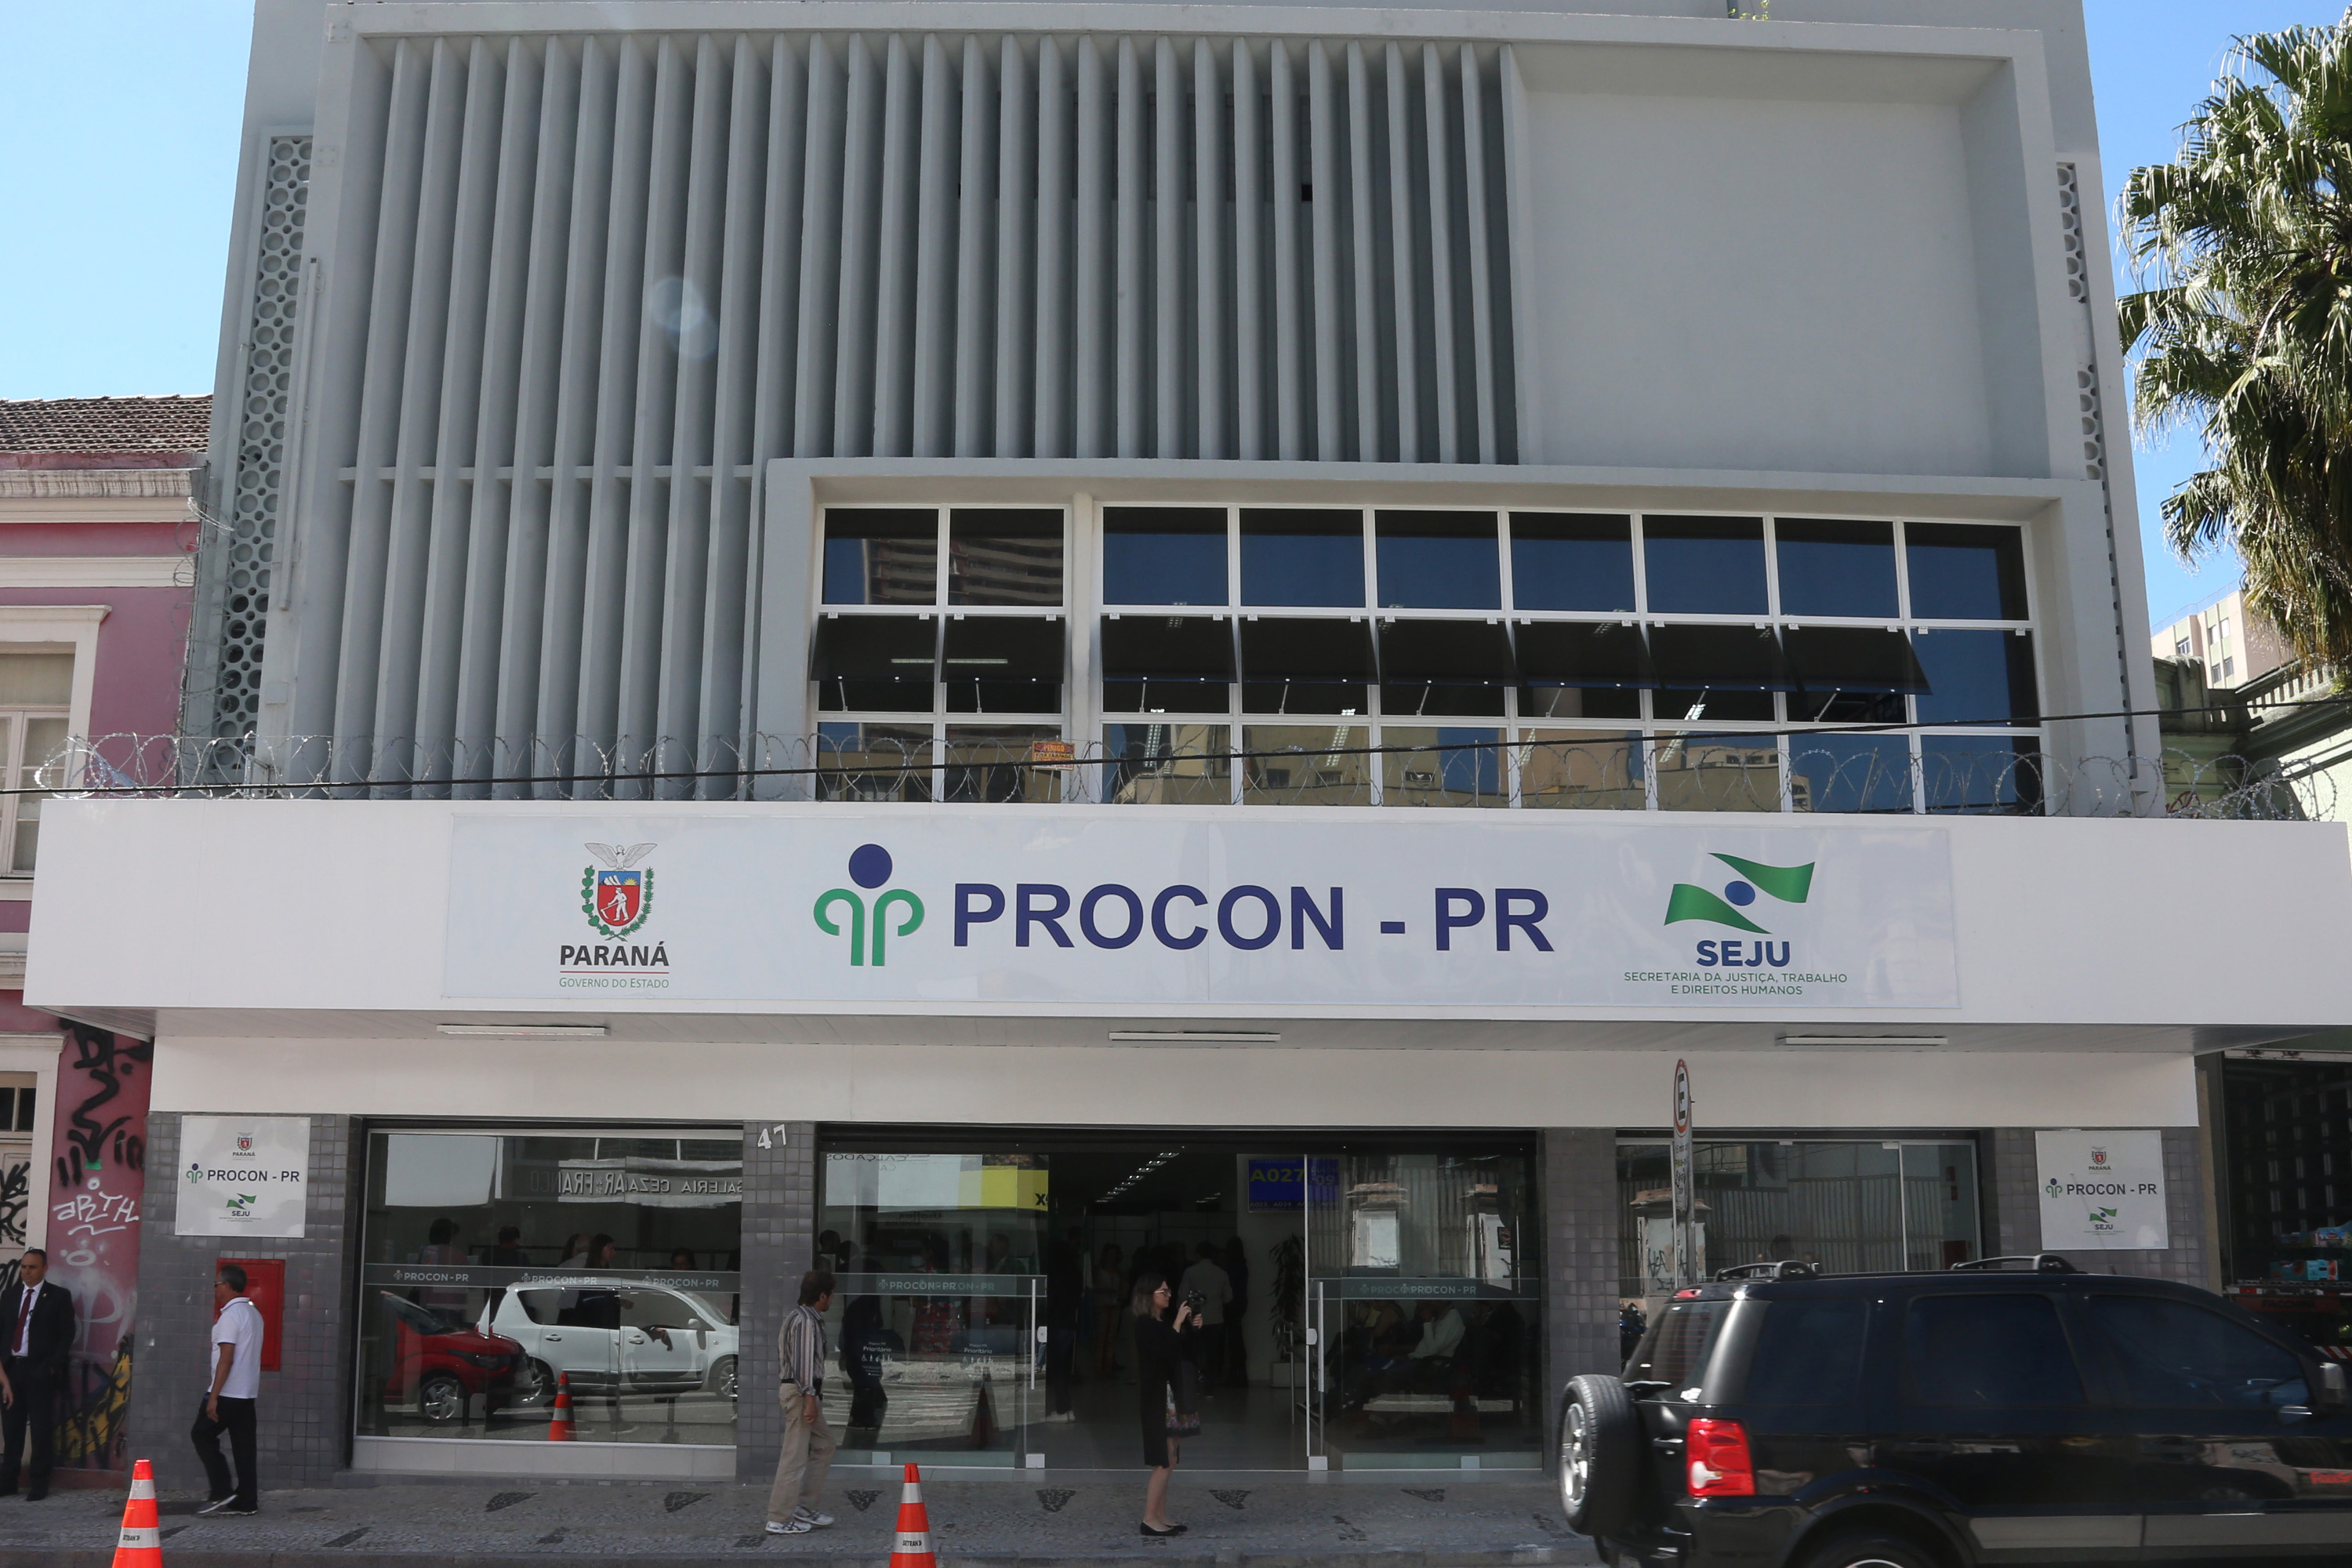  Procon Paraná pode bater recorde de atendimentos em 2018